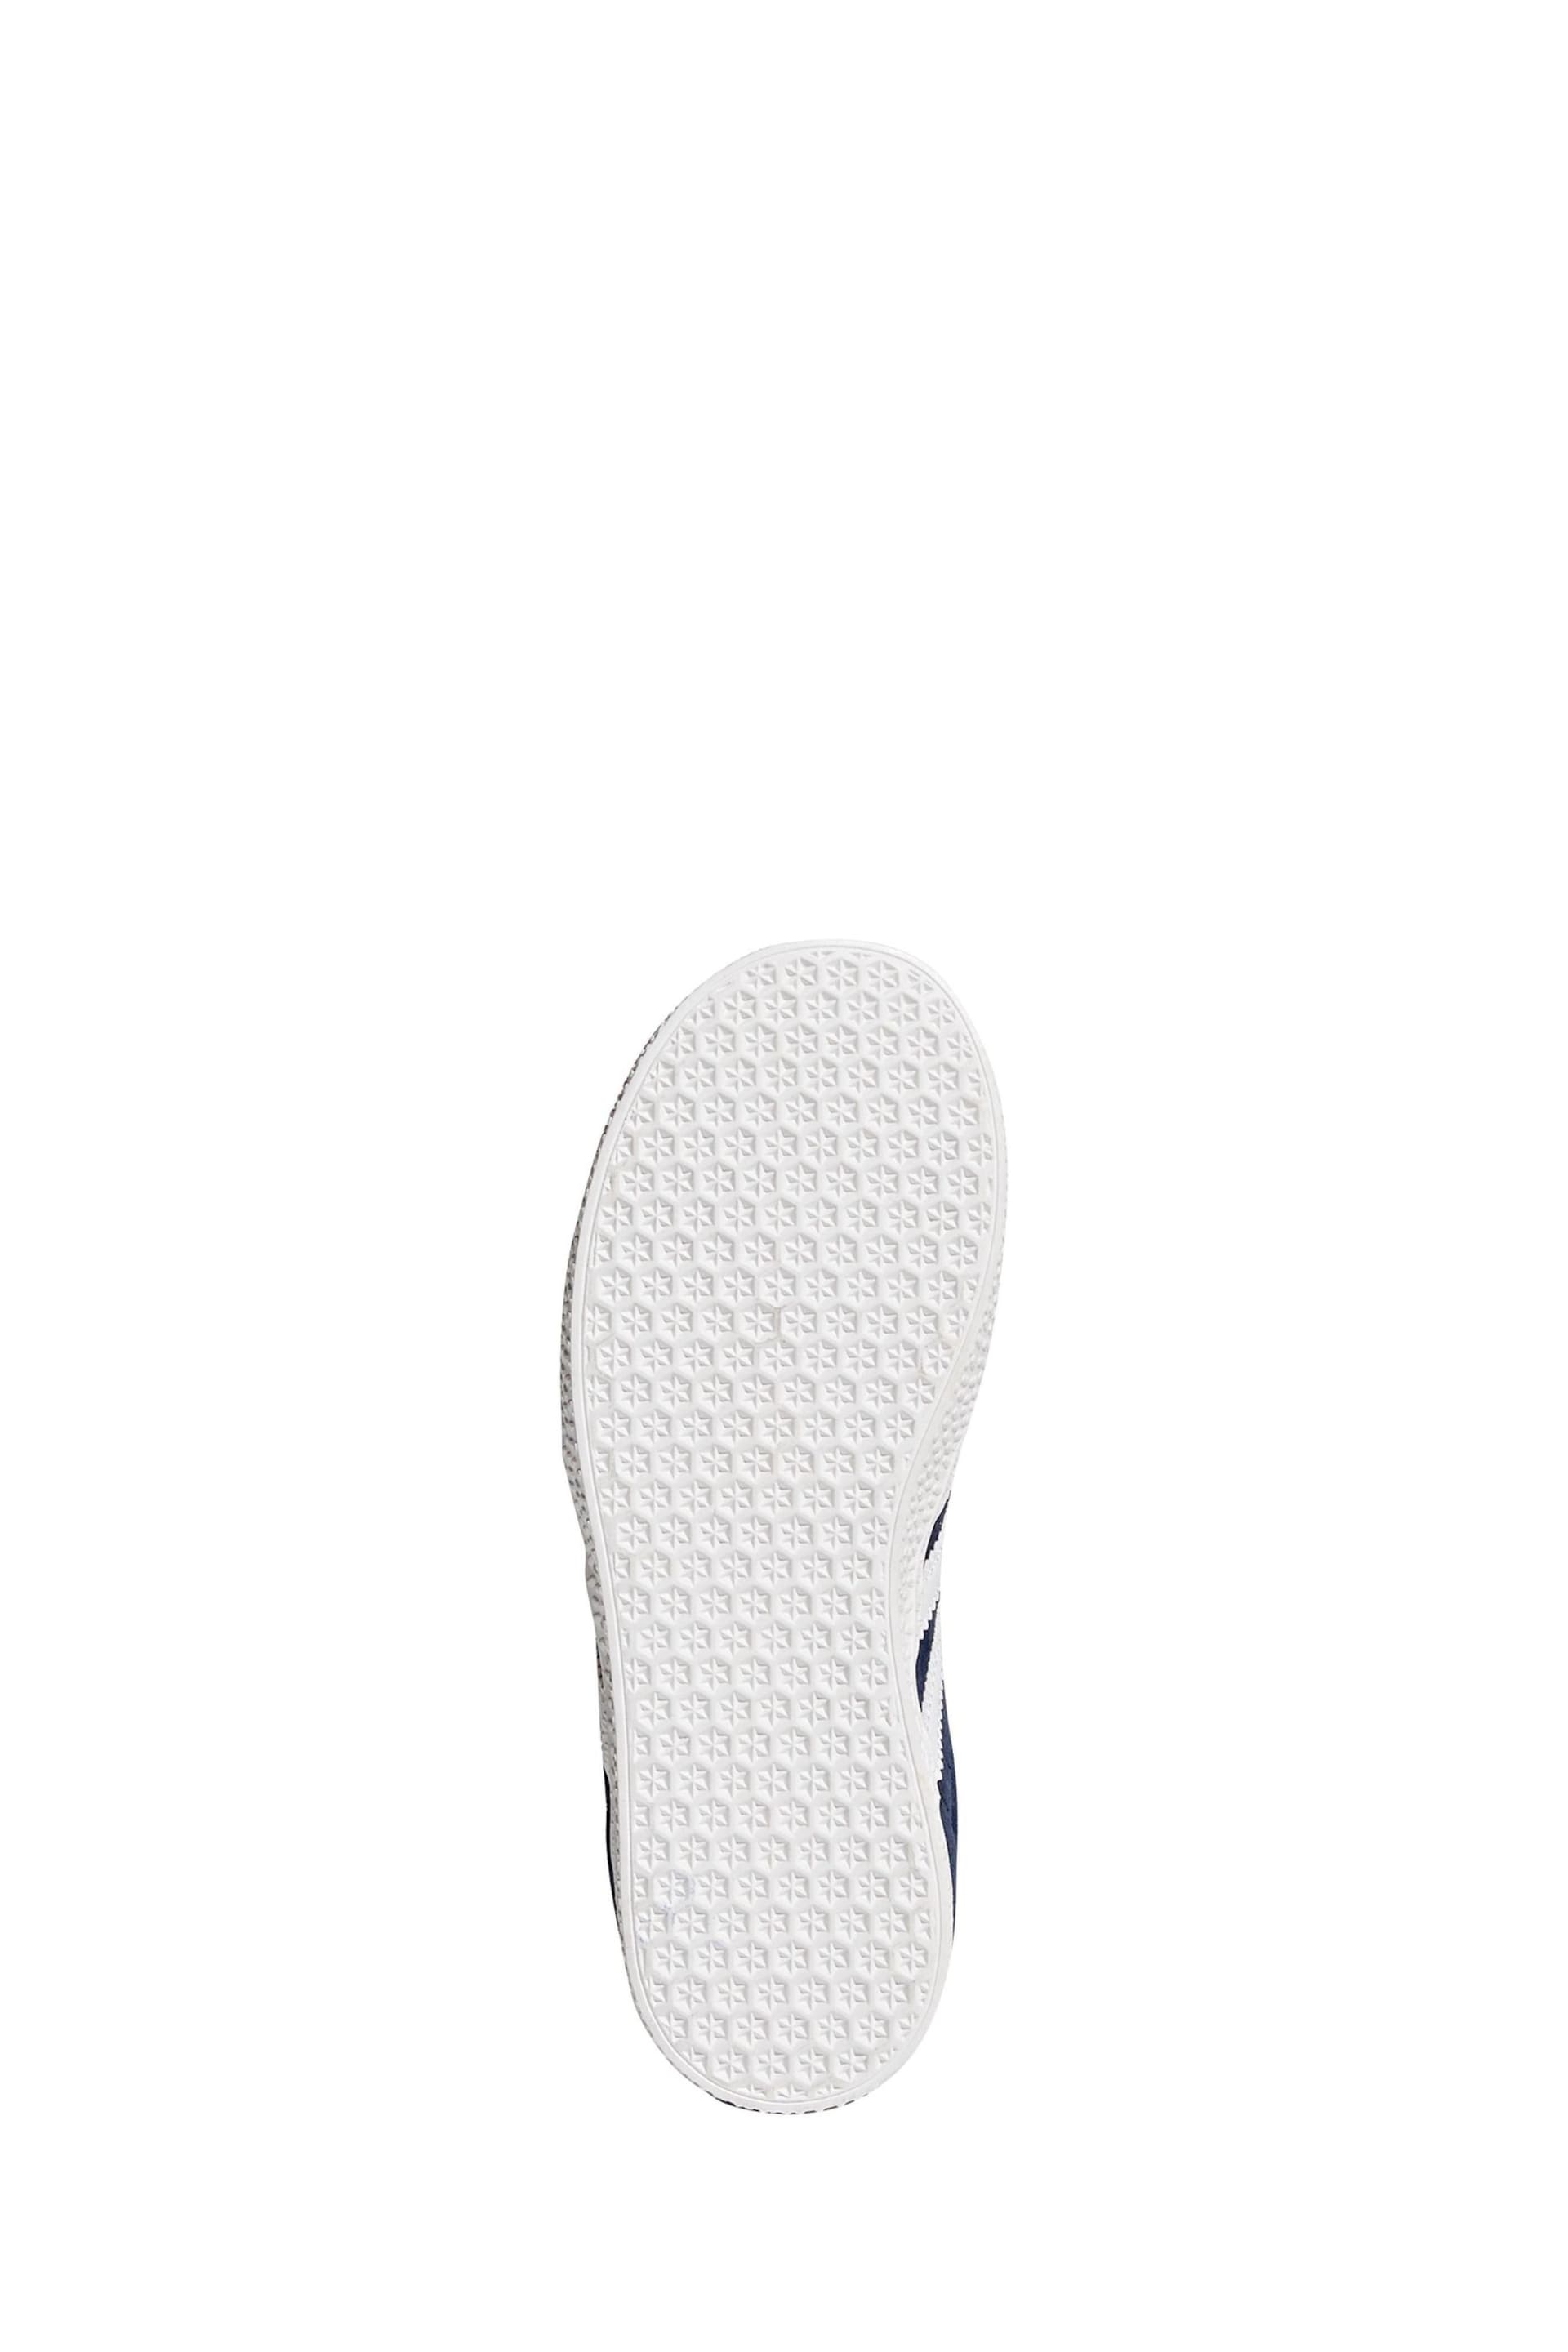 adidas Navy/White Gazelle Shoes - Image 6 of 9